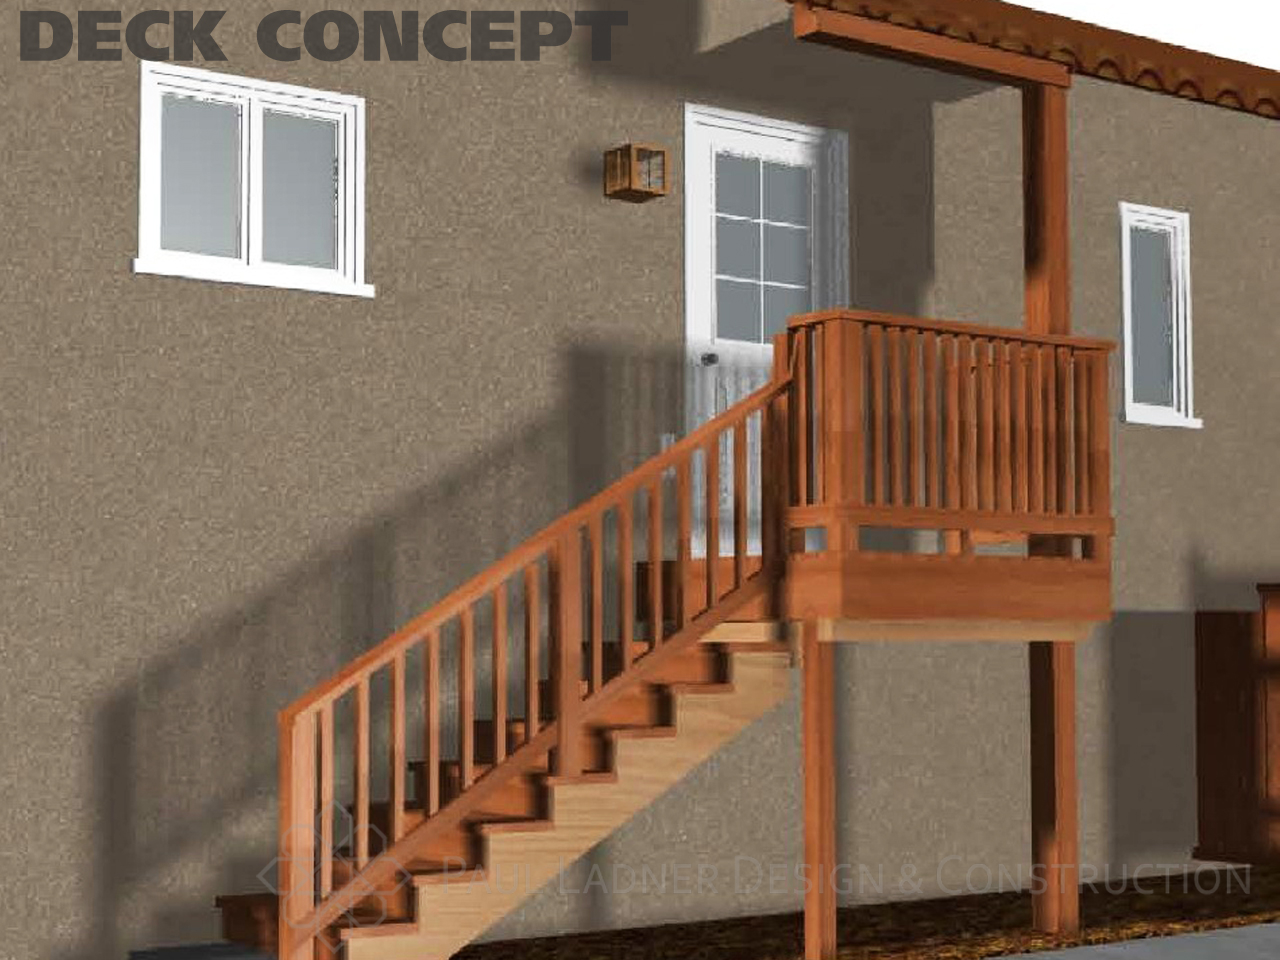 Deck-Concept